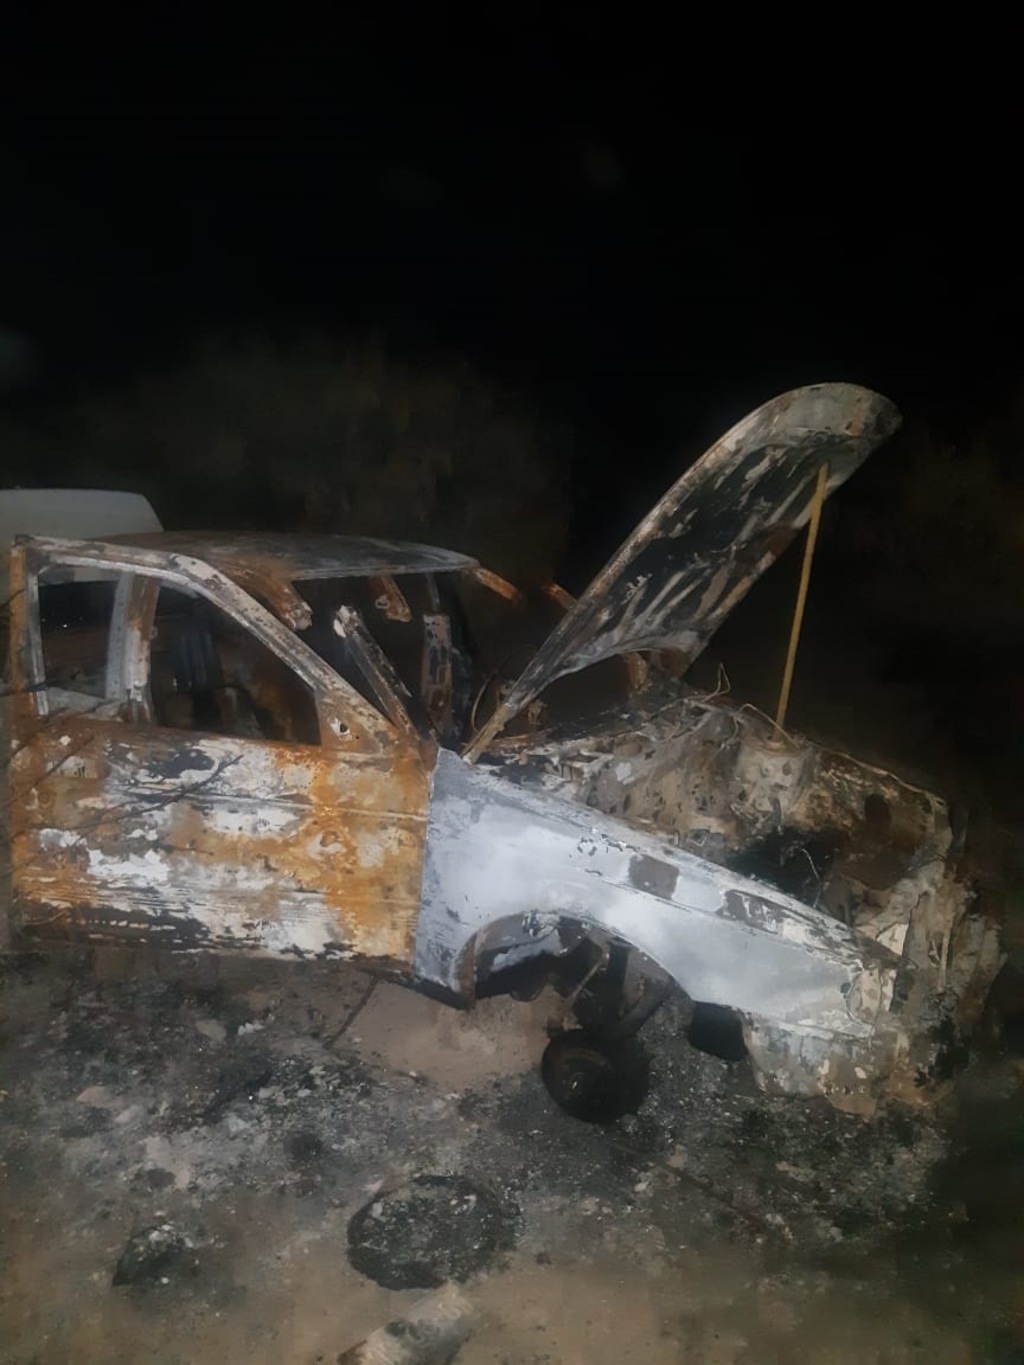 El vehículo fue encontrado quemado y desmantelado en el fraccionamiento San Antonio de la ciudad de Gómez Palacio.